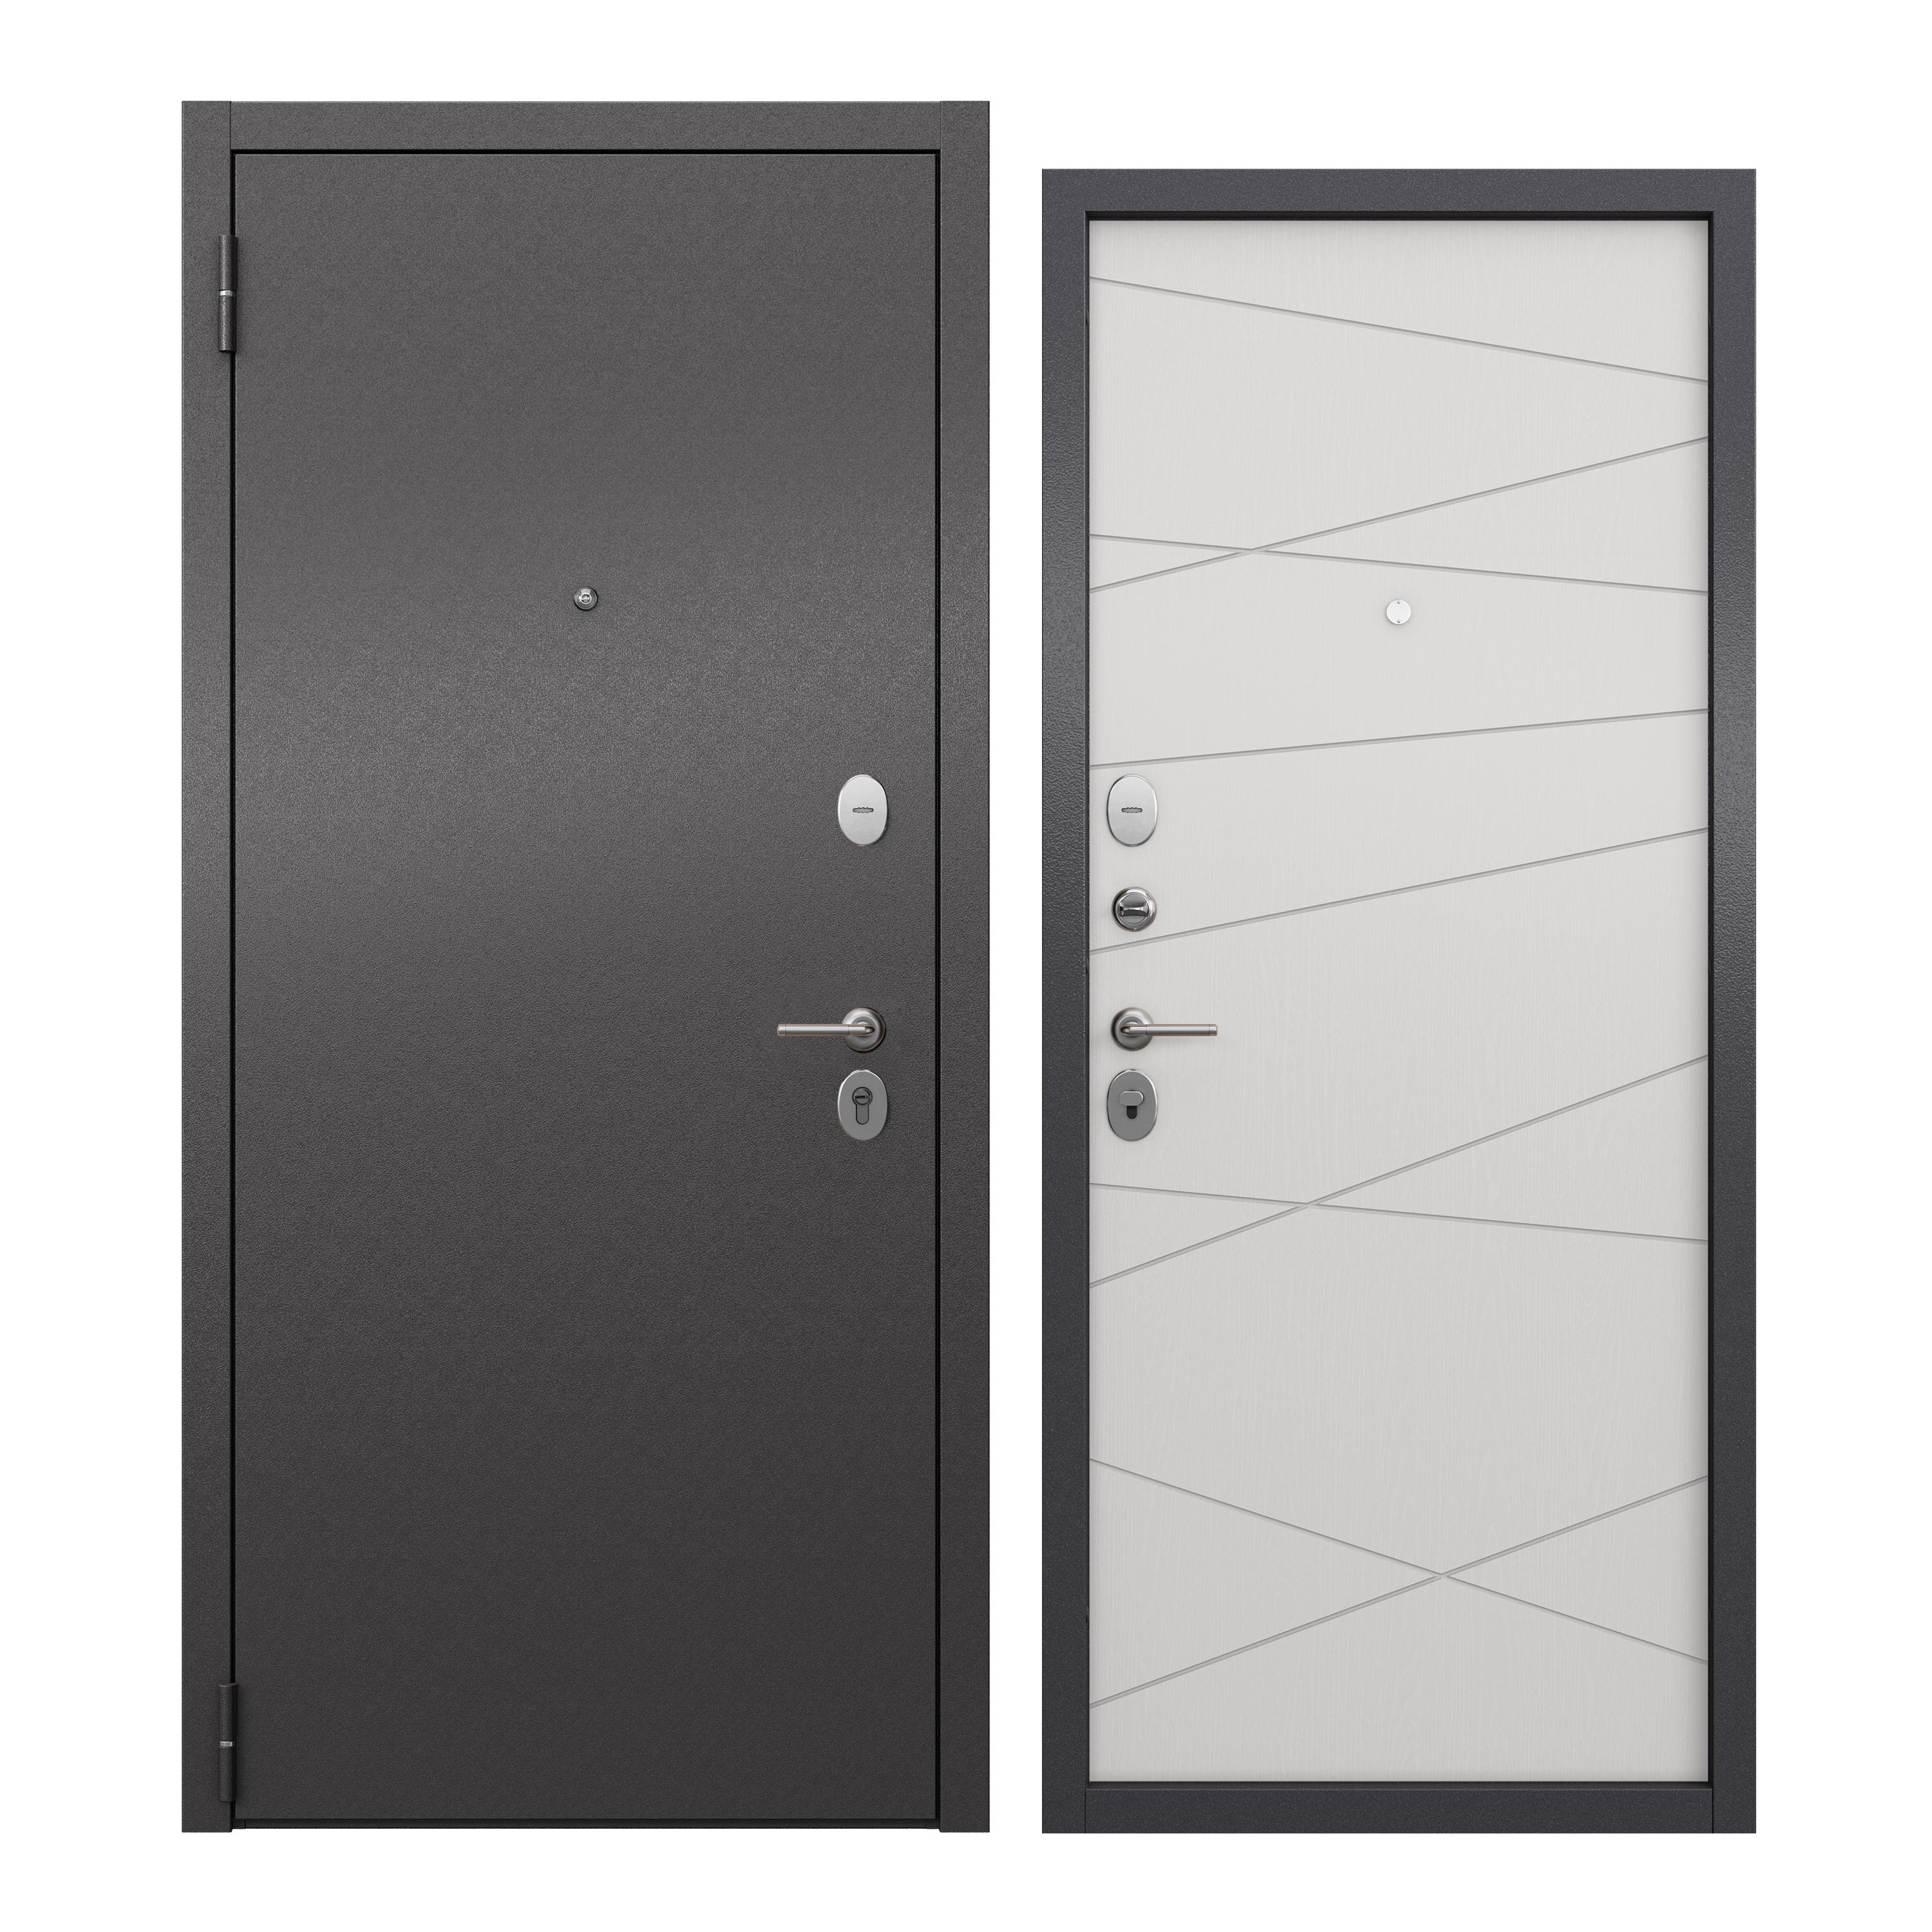 Дверь входная для квартиры ProLine металлическая Apartment X 860х2050, левая, серый/белый дверь входная buldoors тайлер левая букле графит венге 860х2050 мм